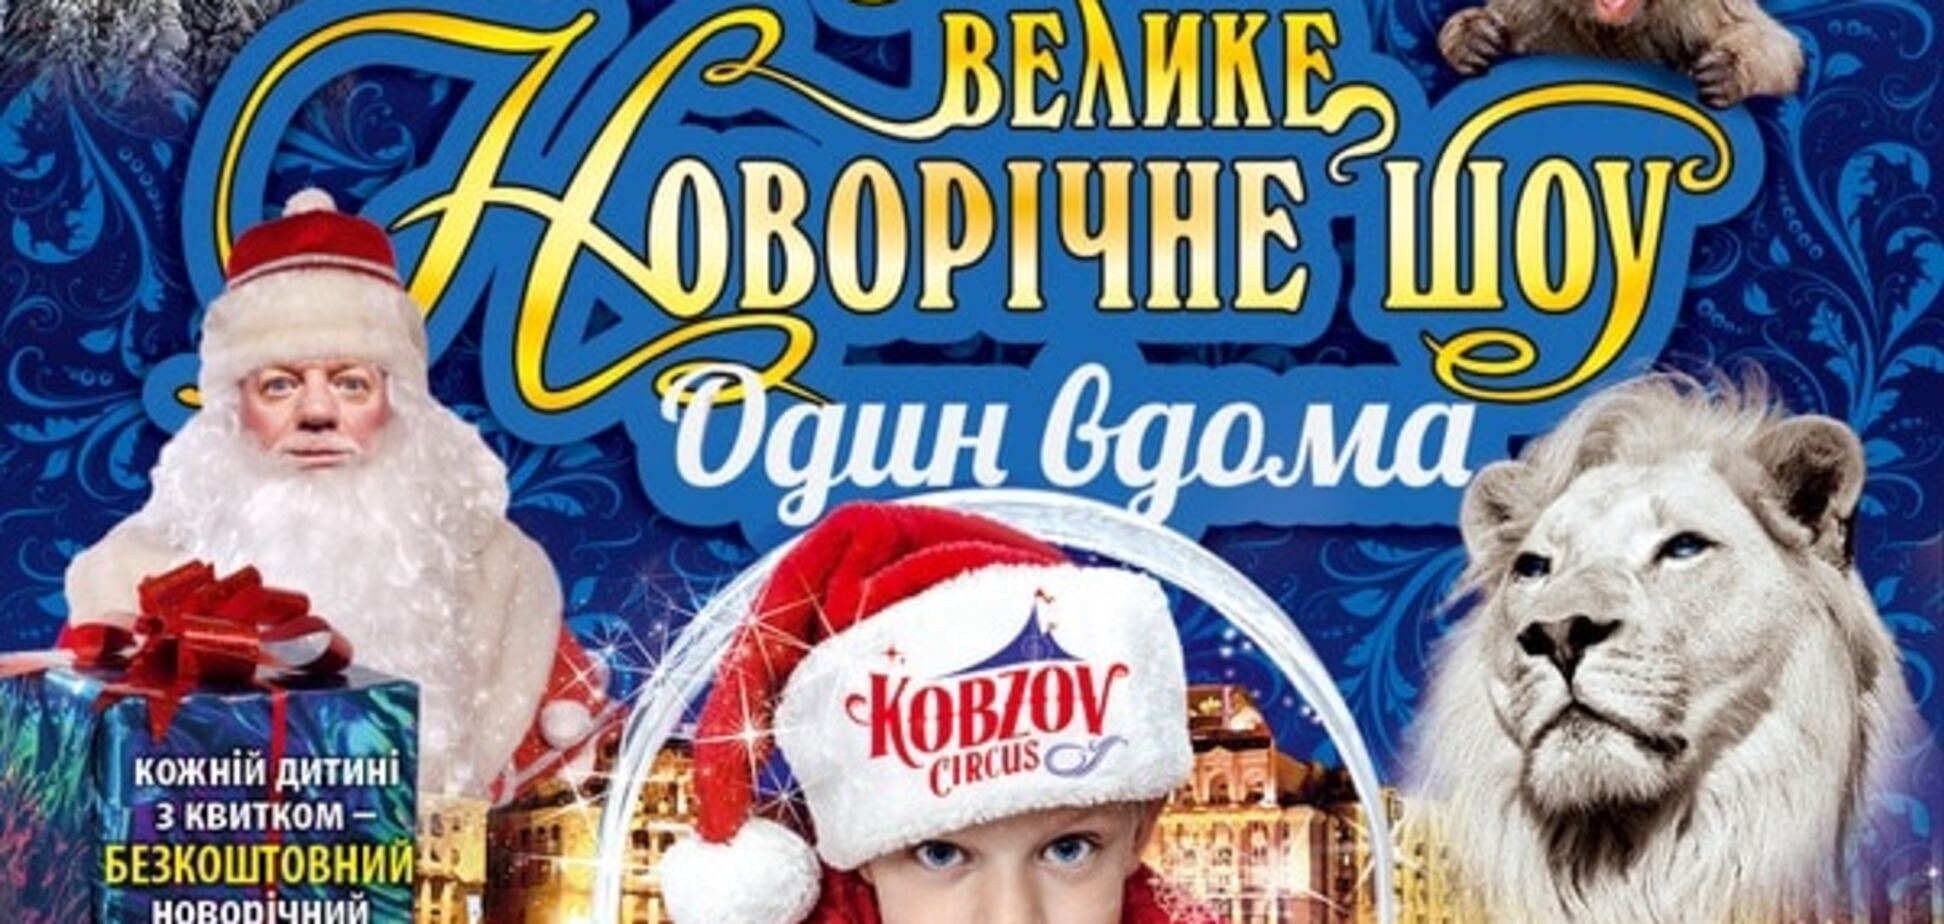 Цирк 'Кобзов' покажет Большое Новогоднее шоу 'Один дома'